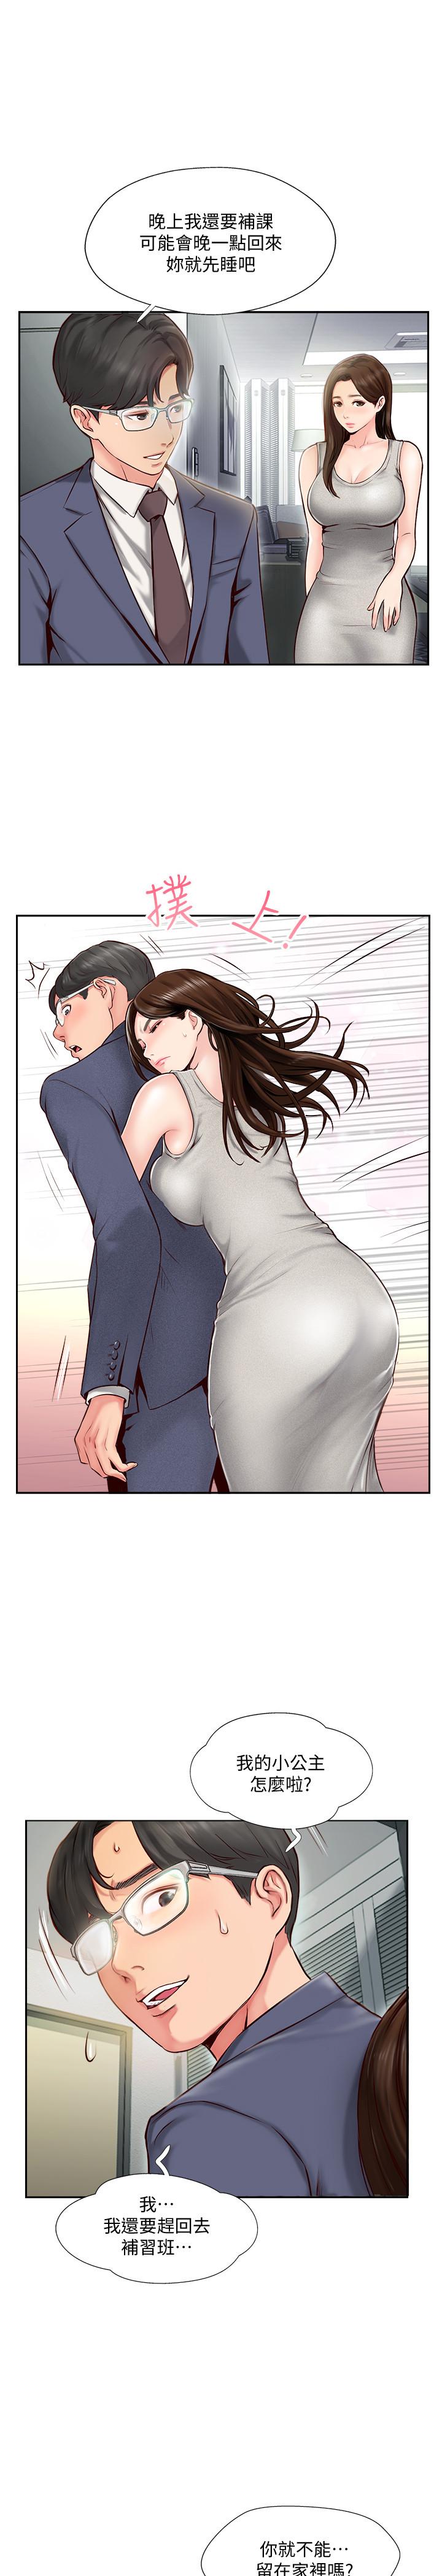 韩国污漫画 完美新伴侶 第1话-难以启齿的渴望 16